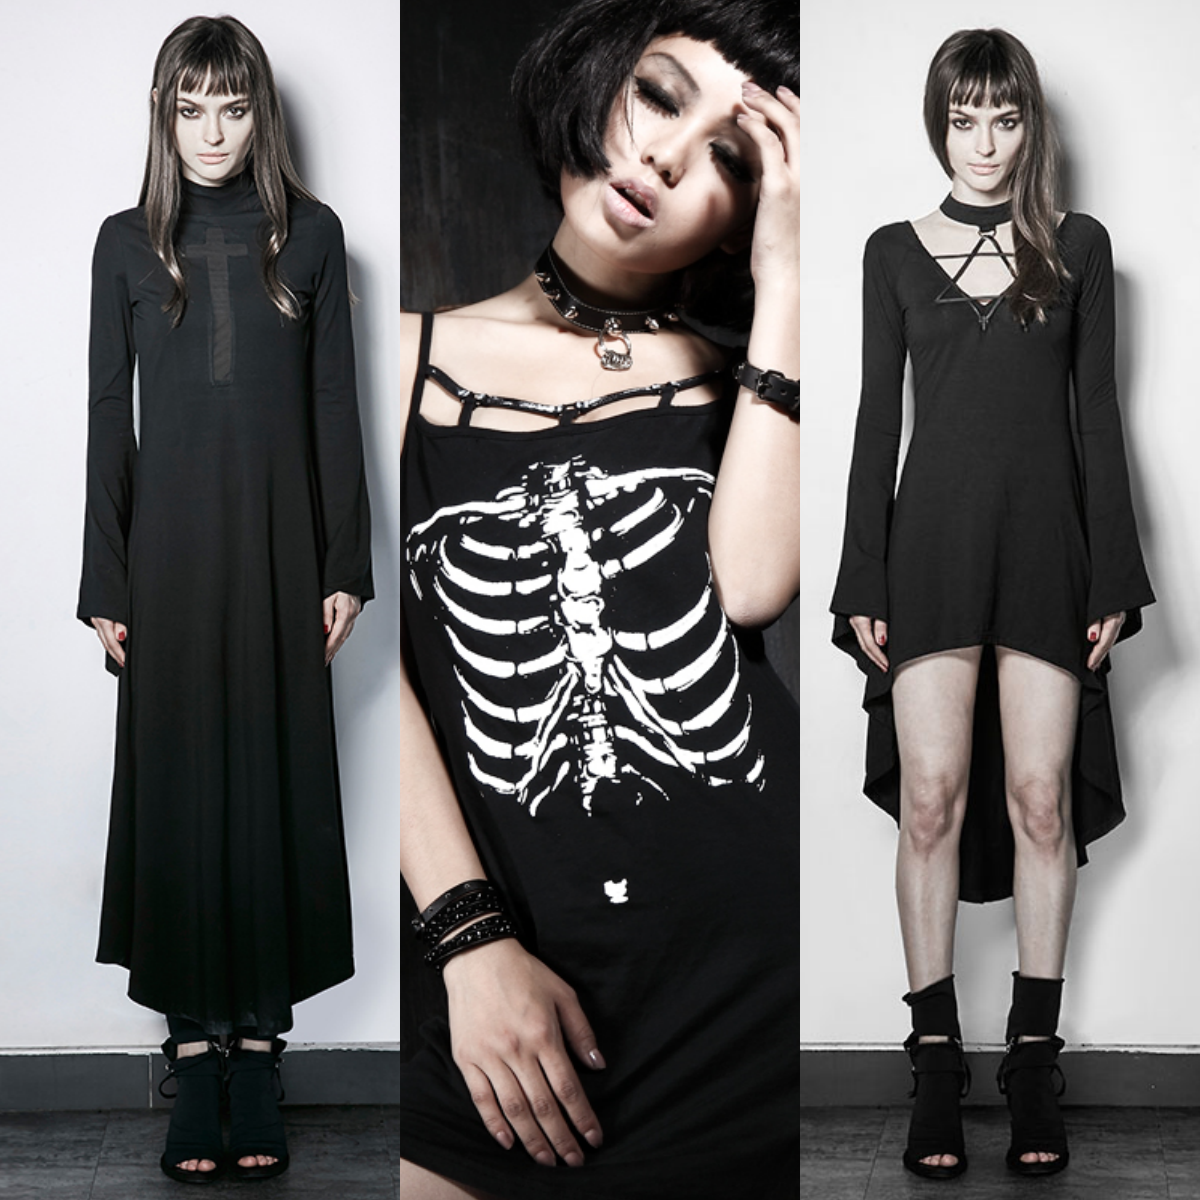 Sweatness,Gotische | Gothic outfits, Hot goth girls 